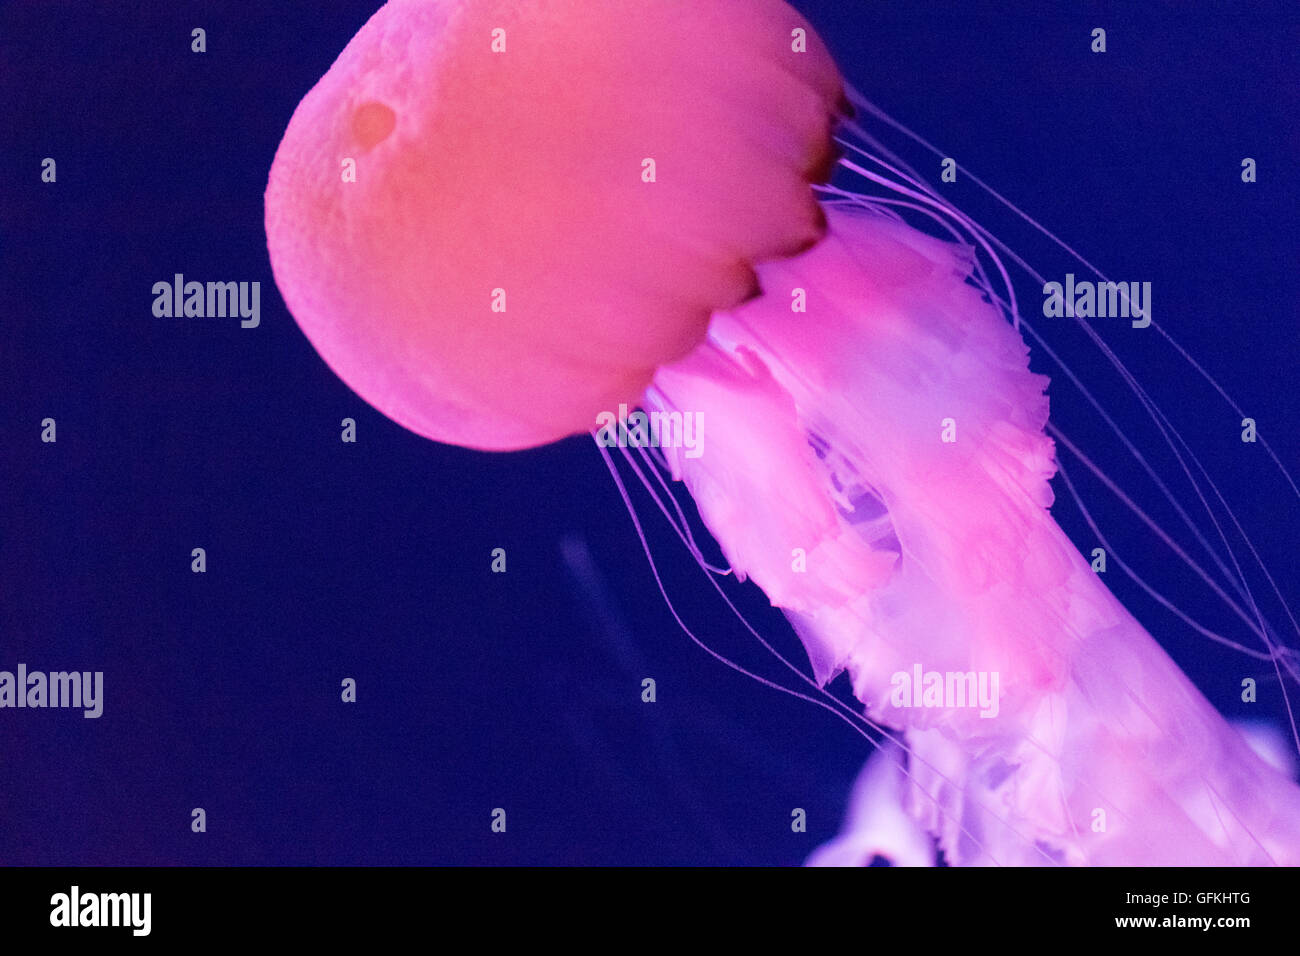 Ortica di mare indonesiana. È la specie endemica indonesiana di meduse. Foto Stock